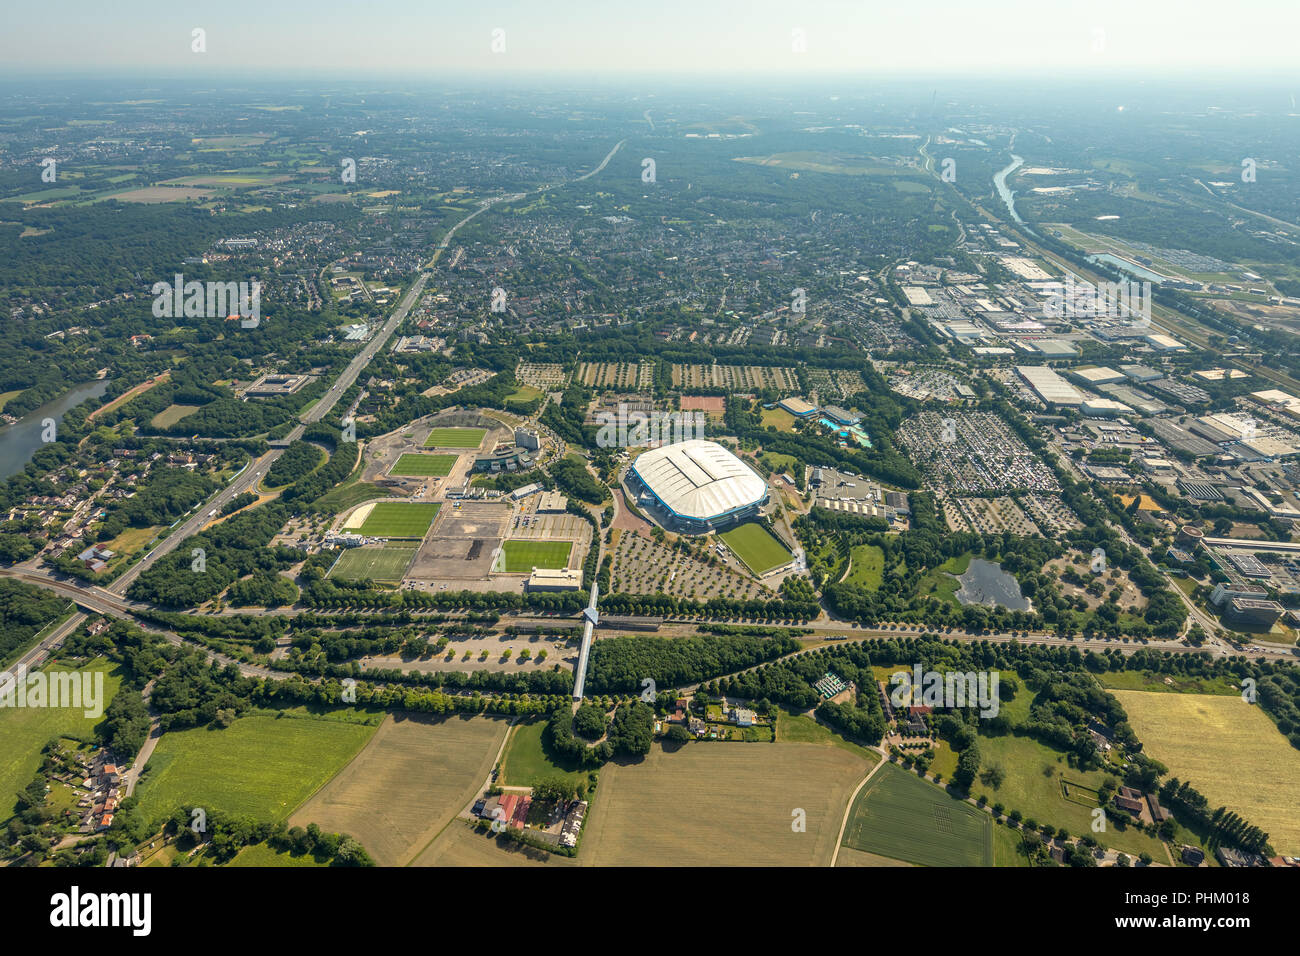 Vue aérienne, l'ARENA PARK Gelsenkirchen, Veltins-Arena, Arena AufSchalke dans Gelsenkirchen est le stade de soccer du club de football allemand, le FC Schalke 04 Banque D'Images